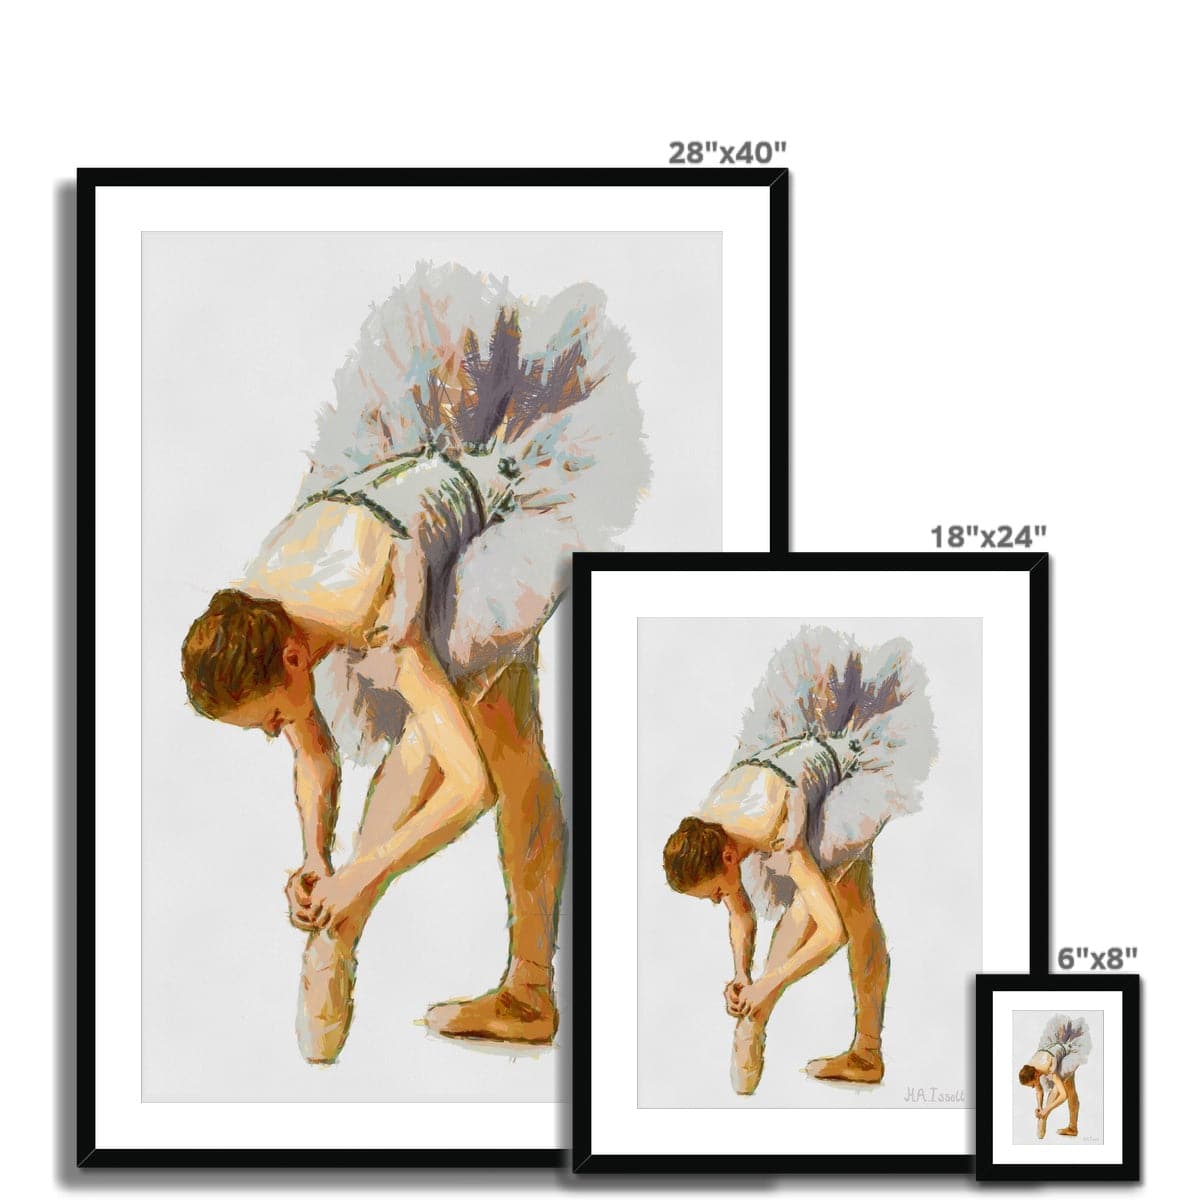 Ballerina Preparing for Performance Framed & Mounted Print